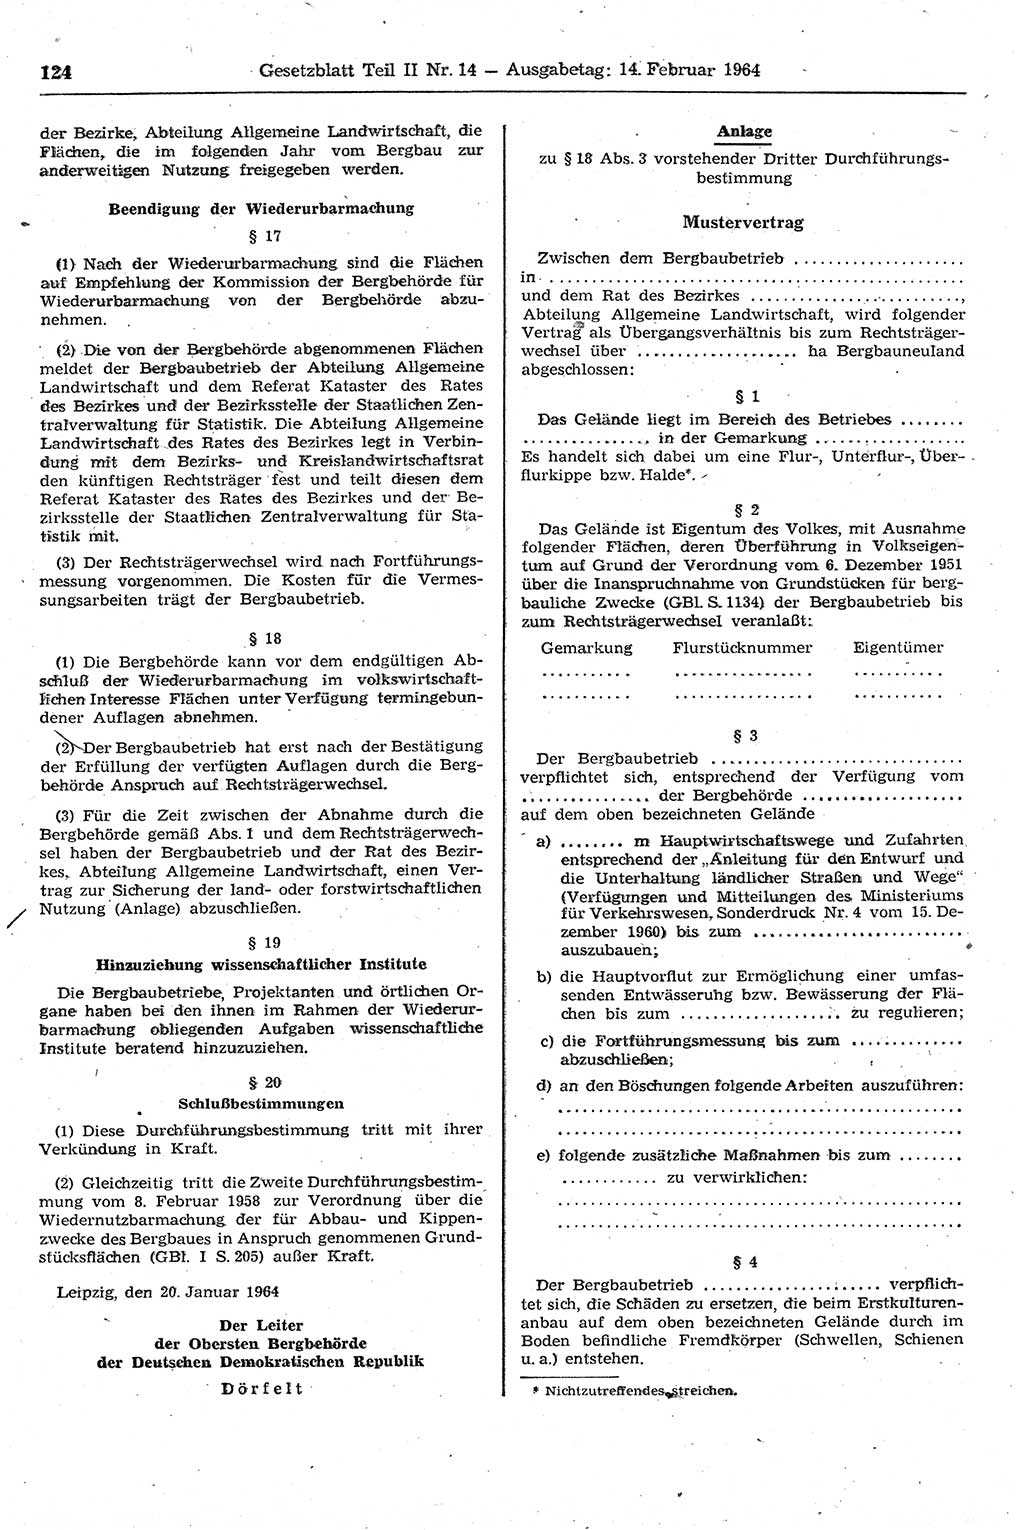 Gesetzblatt (GBl.) der Deutschen Demokratischen Republik (DDR) Teil ⅠⅠ 1964, Seite 124 (GBl. DDR ⅠⅠ 1964, S. 124)